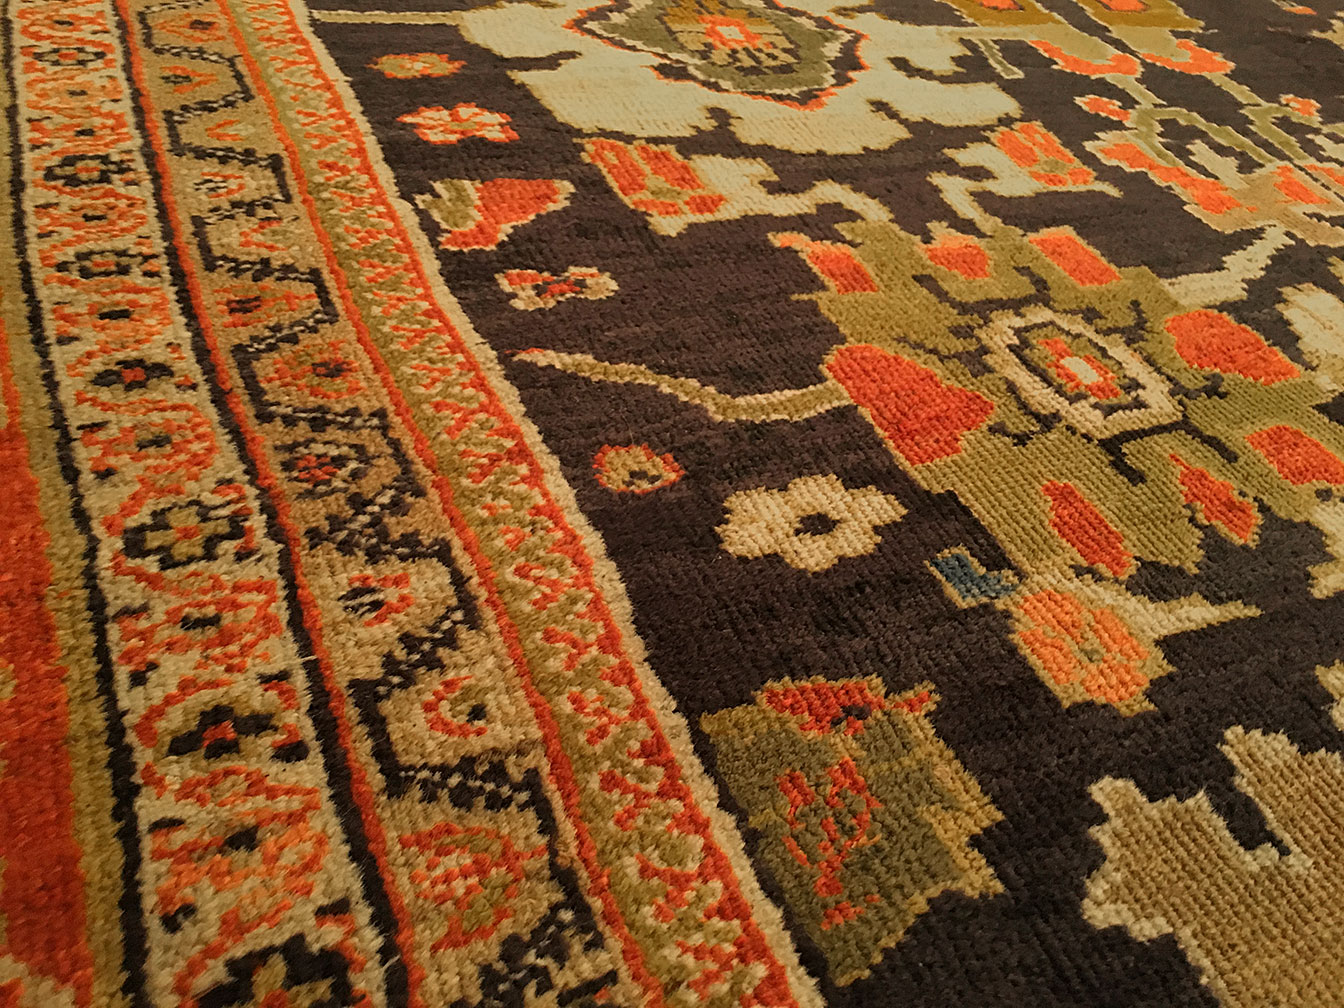 Antique sultan abad Carpet - # 4360